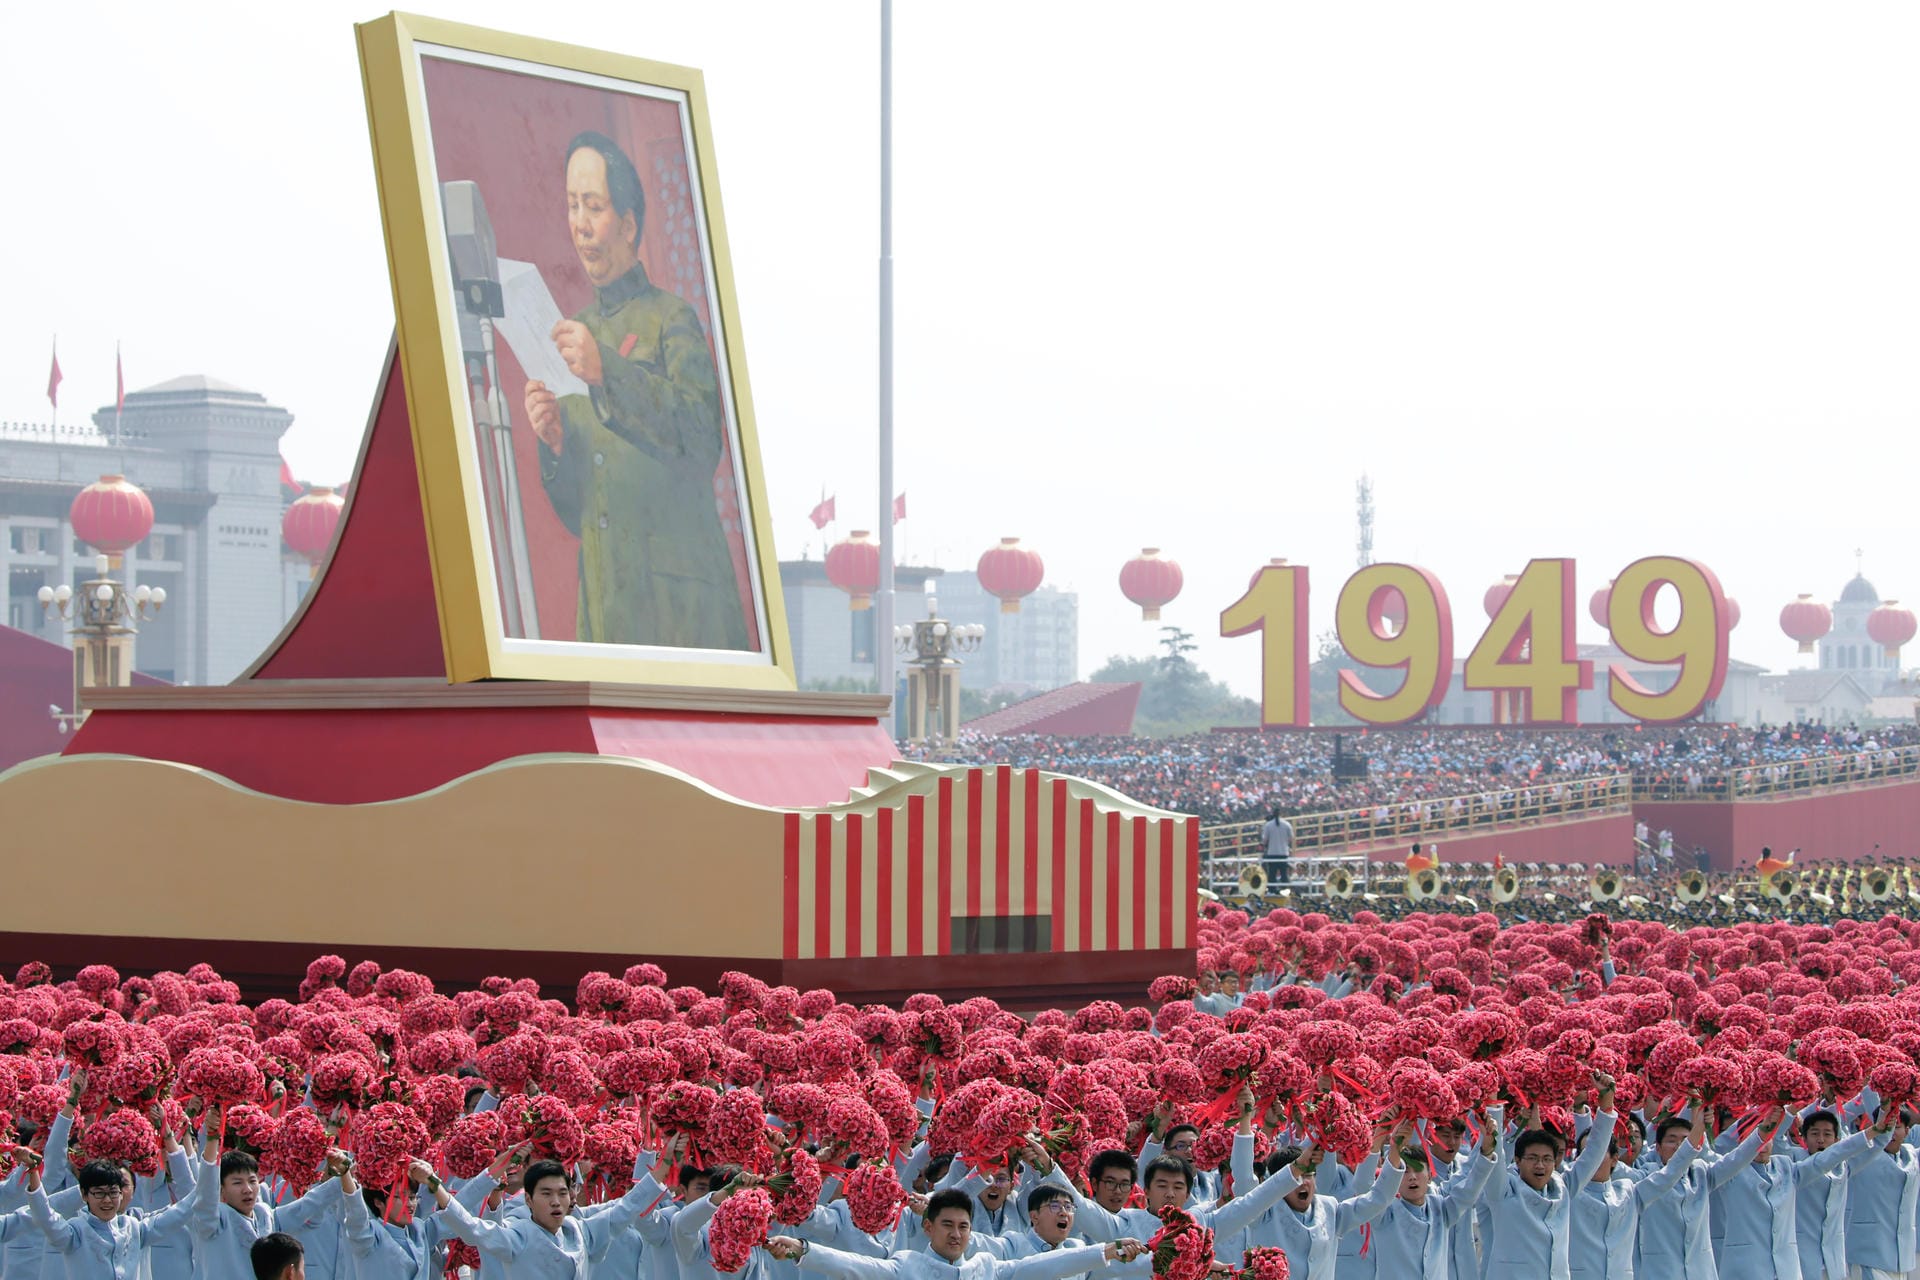 Ein riesiges Bild von Mao Tsetung: Mit der Truppenschau will die kommunistische Führung nach Angaben von Experten militärische Stärke, ihren Machtanspruch und internationalen Gestaltungswillen demonstrieren.